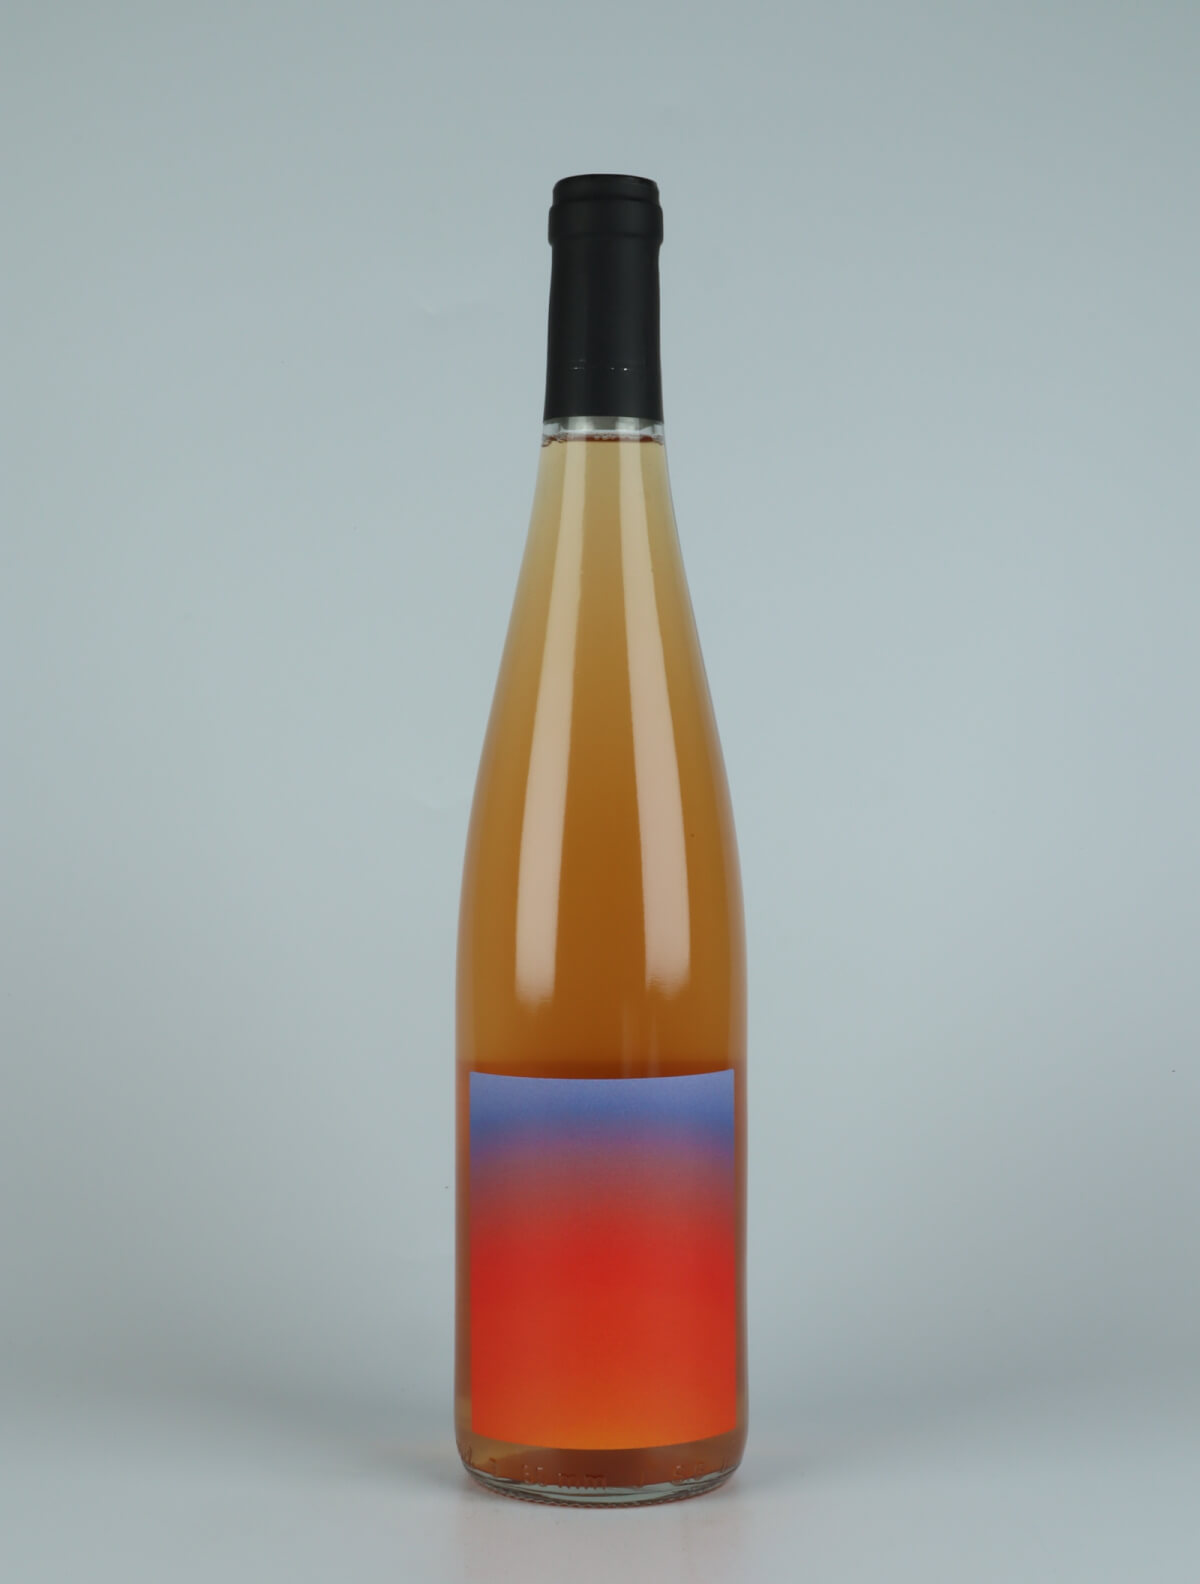 En flaske 2021 L’Impatient Orange vin fra Domaine Goepp, Alsace i Frankrig